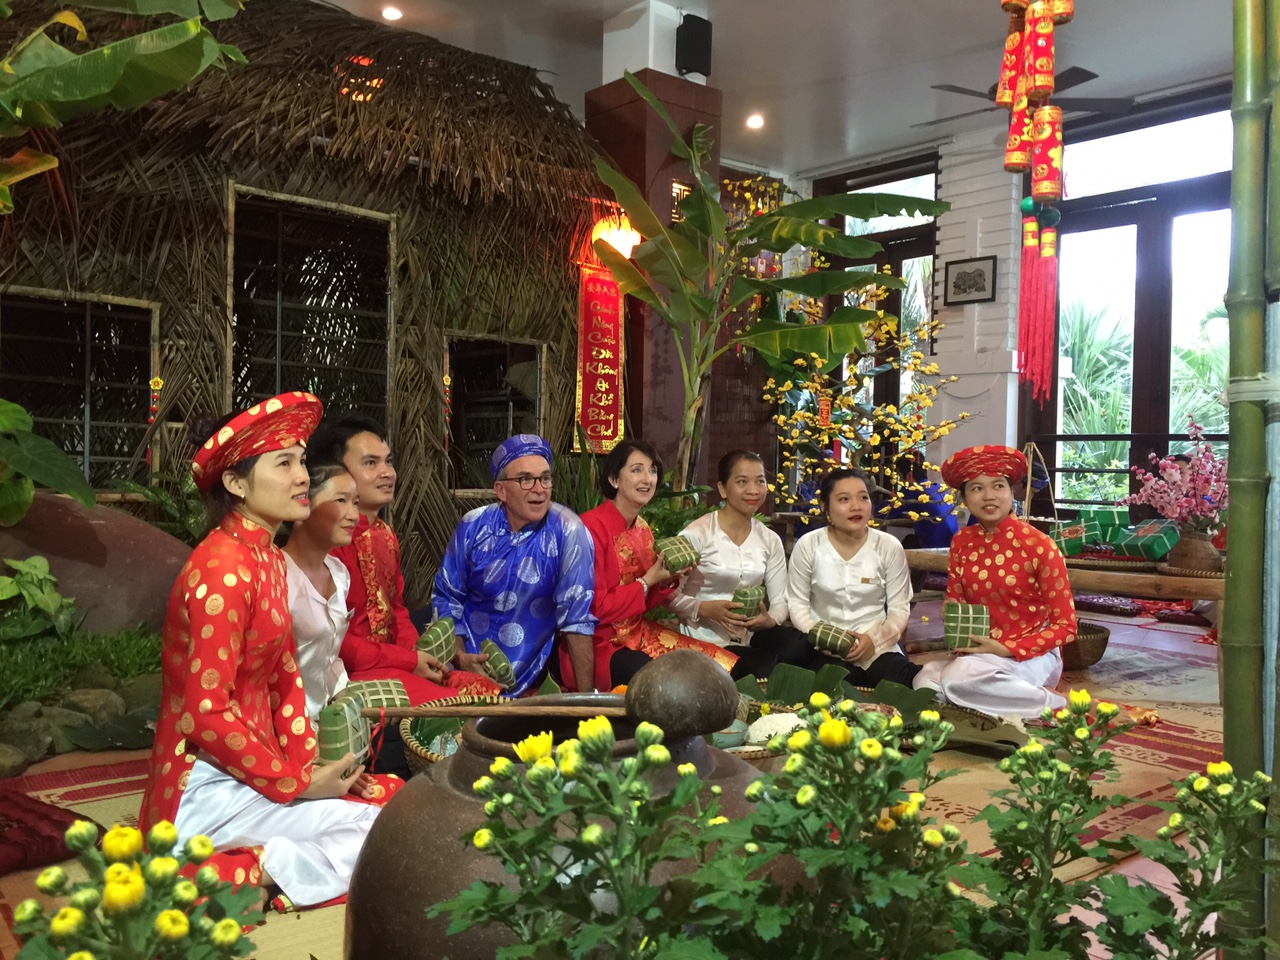 Quảng Bình đón hơn 152 nghìn lượt khách du lịch dịp tết Nguyên đán Kỷ Hợi